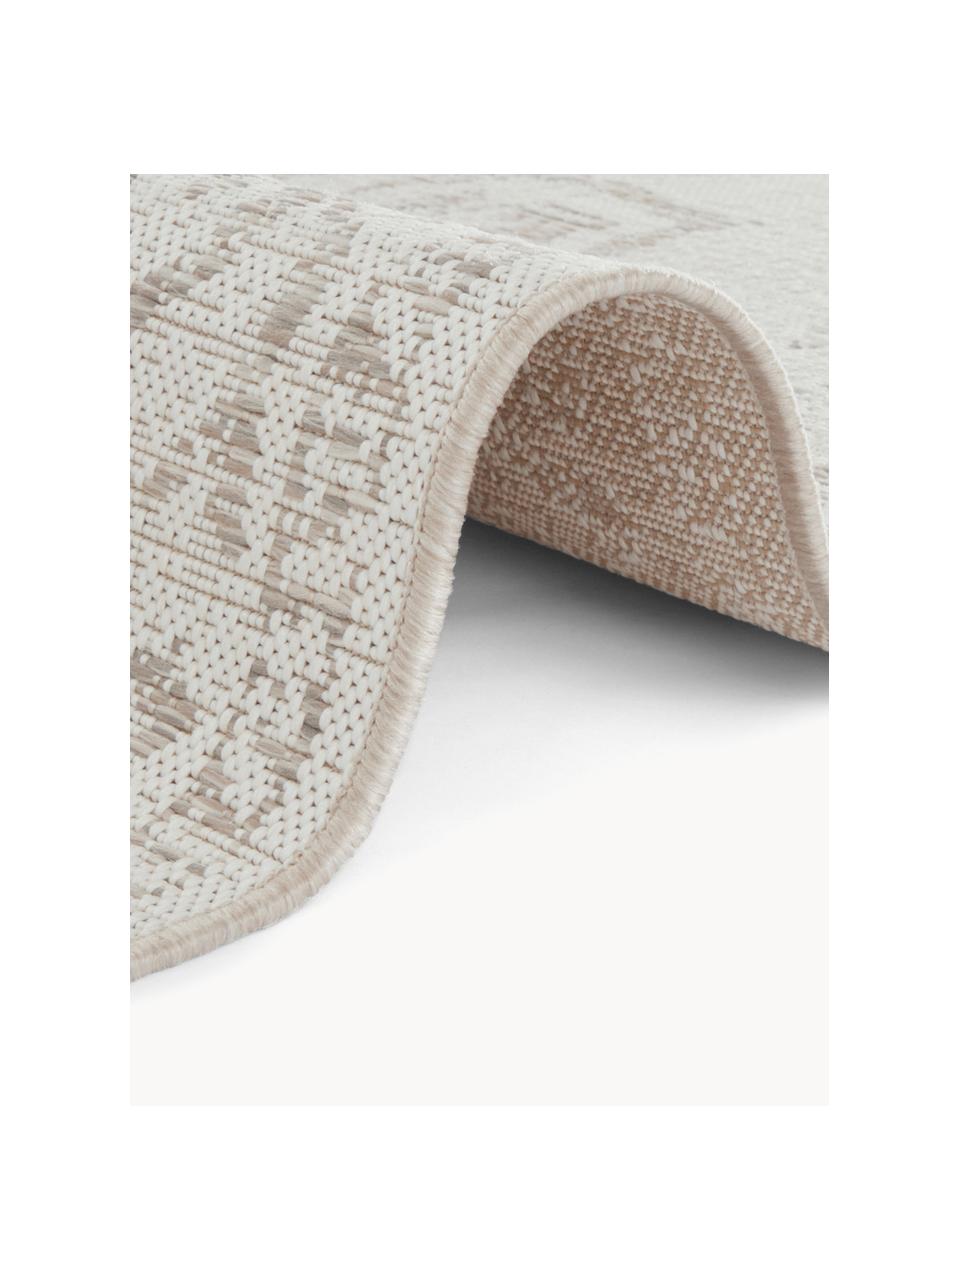 Interiérový/exteriérový koberec Tilos, 100 % polypropylen, Odstíny béžové, Š 200 cm, D 290 cm (velikost L)